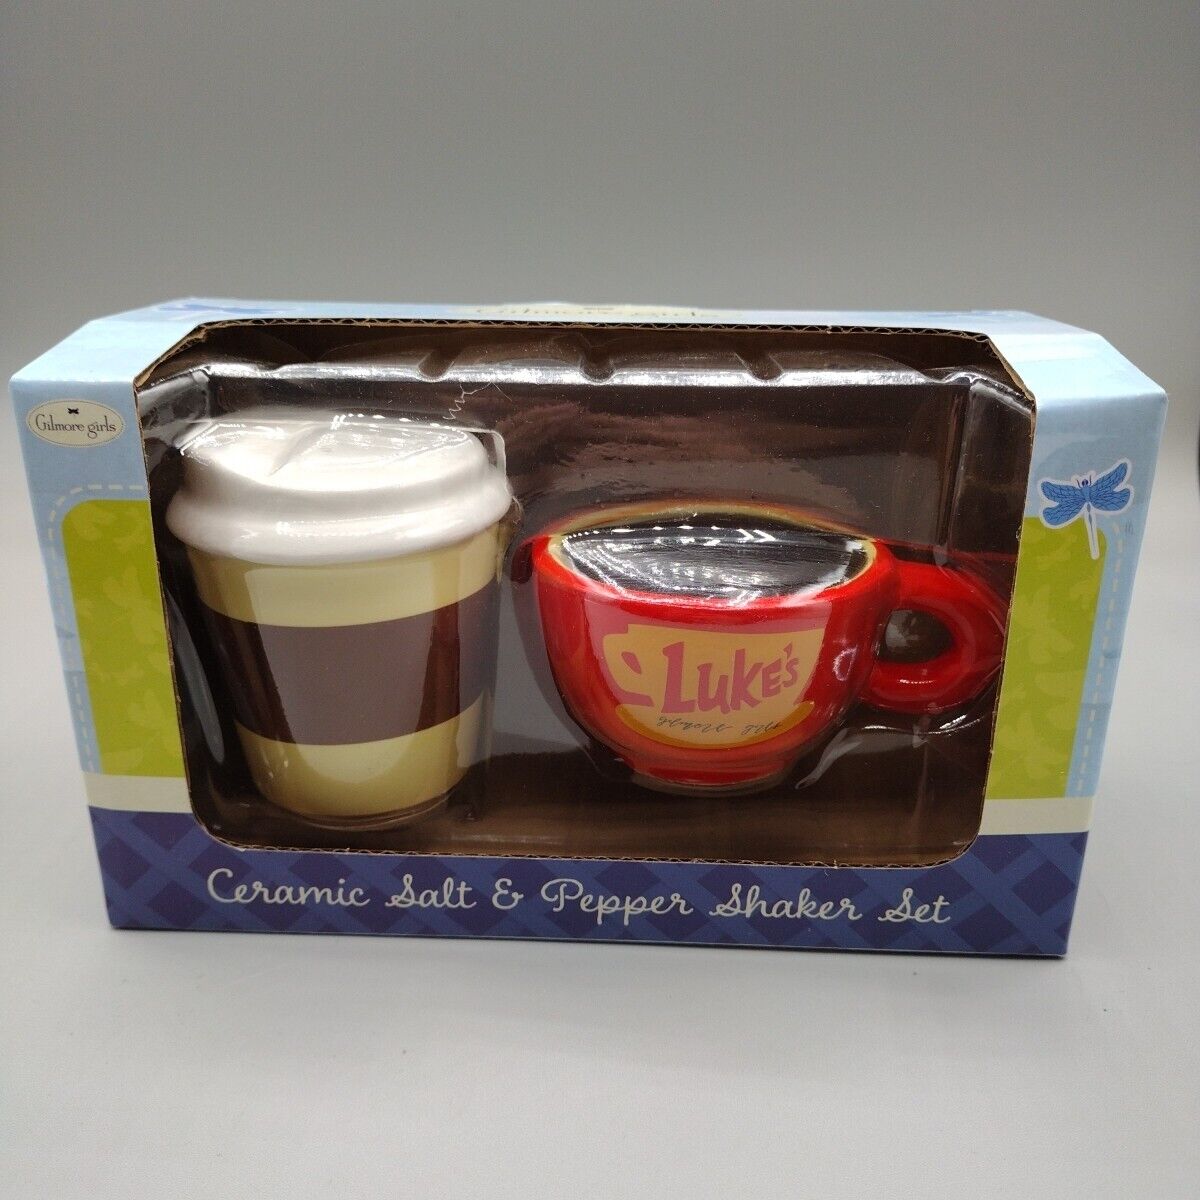 Gilmore Girls Latte Mug Ceramic Salt And Pepper Shaker Set “Luke’s” NEW Sealed